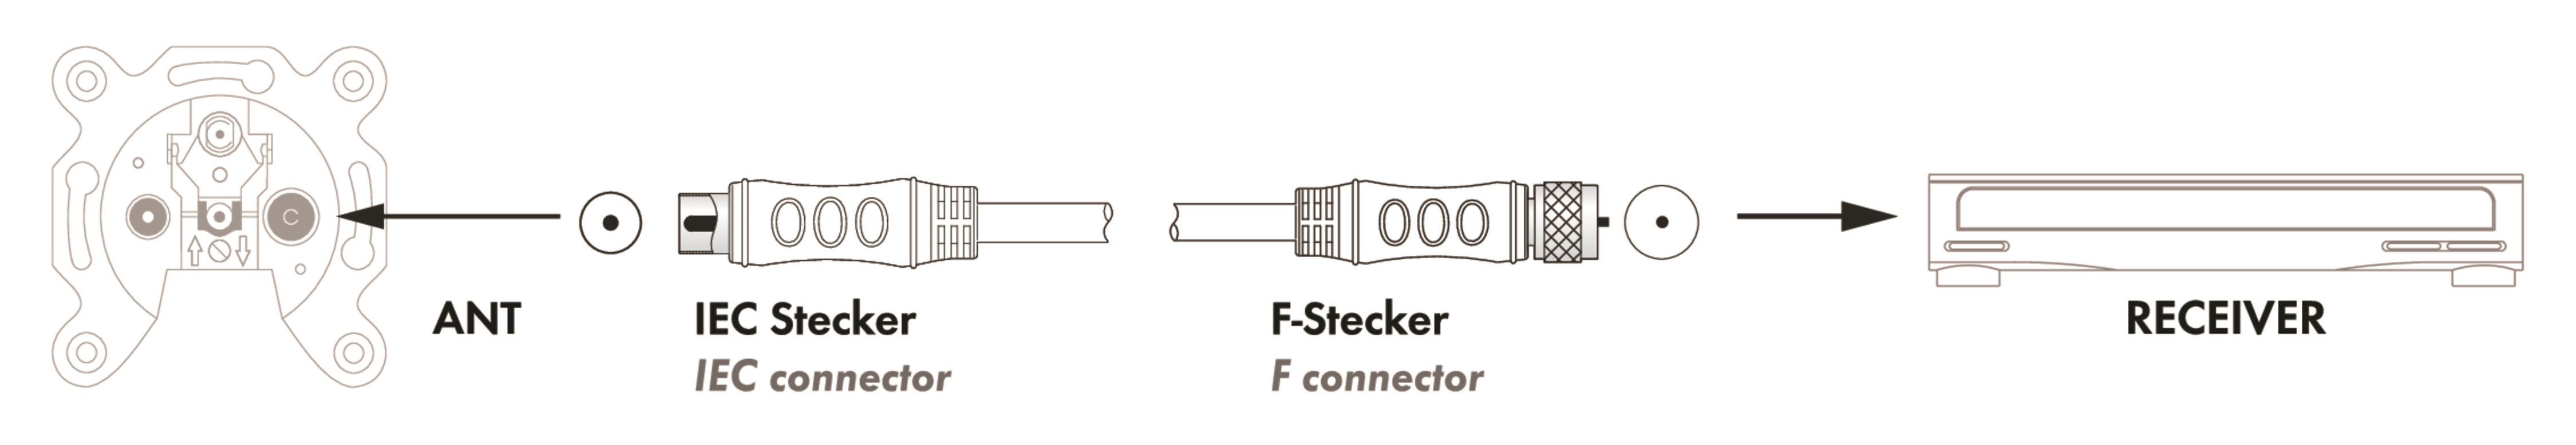 zu -KVCKHQ185 Stecker 532- F-Stecker (90 SCHWAIGER Adapterkabel SAT/Antennen IEC dB)